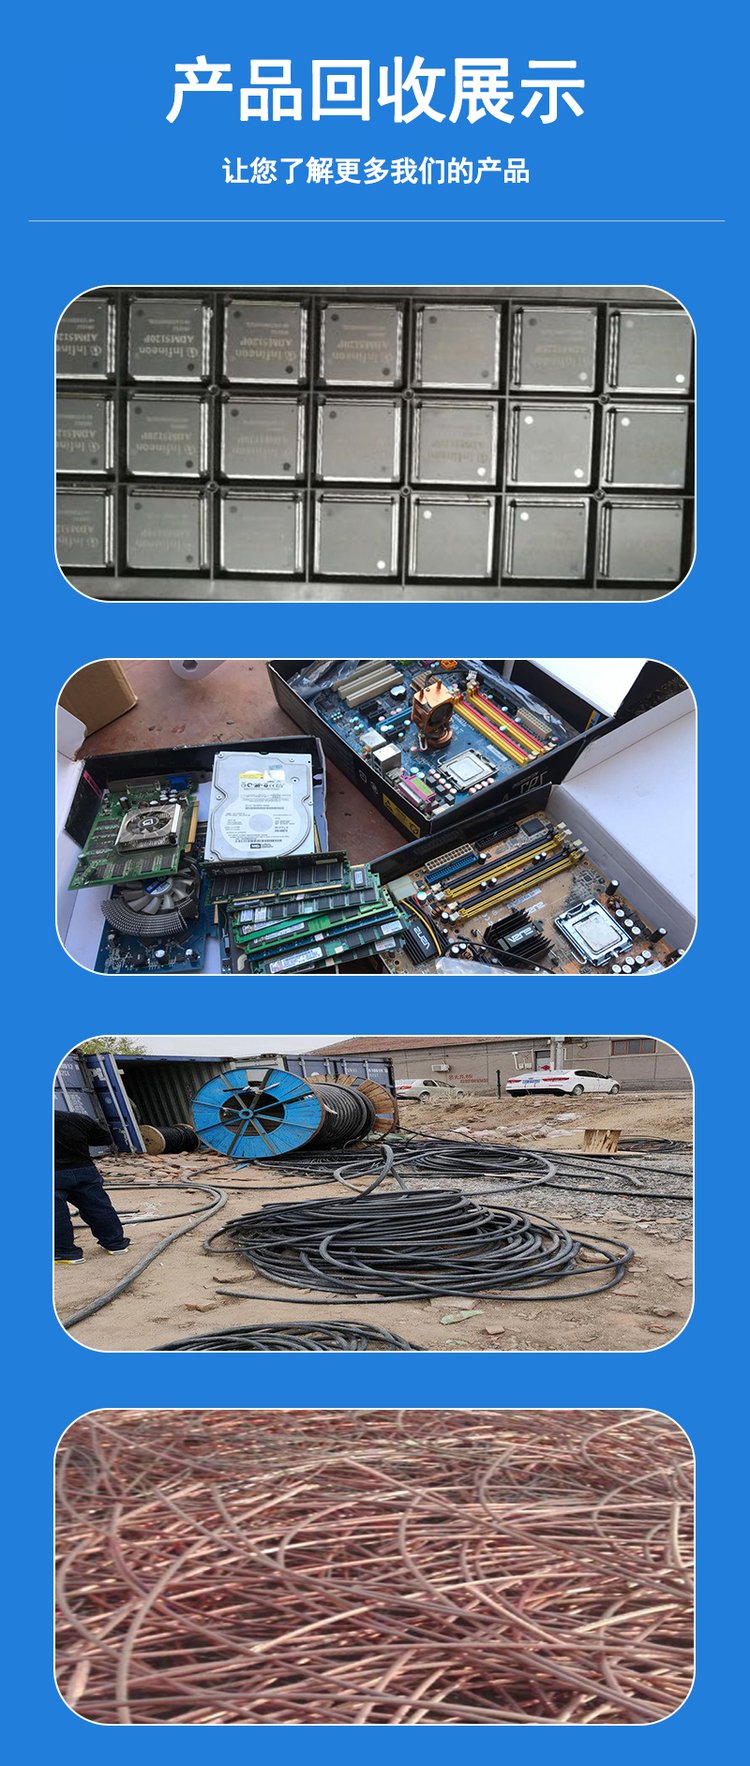 深圳南山区 附近废品回收打包厂 西丽 蛇口 科技园 废旧电路板回收